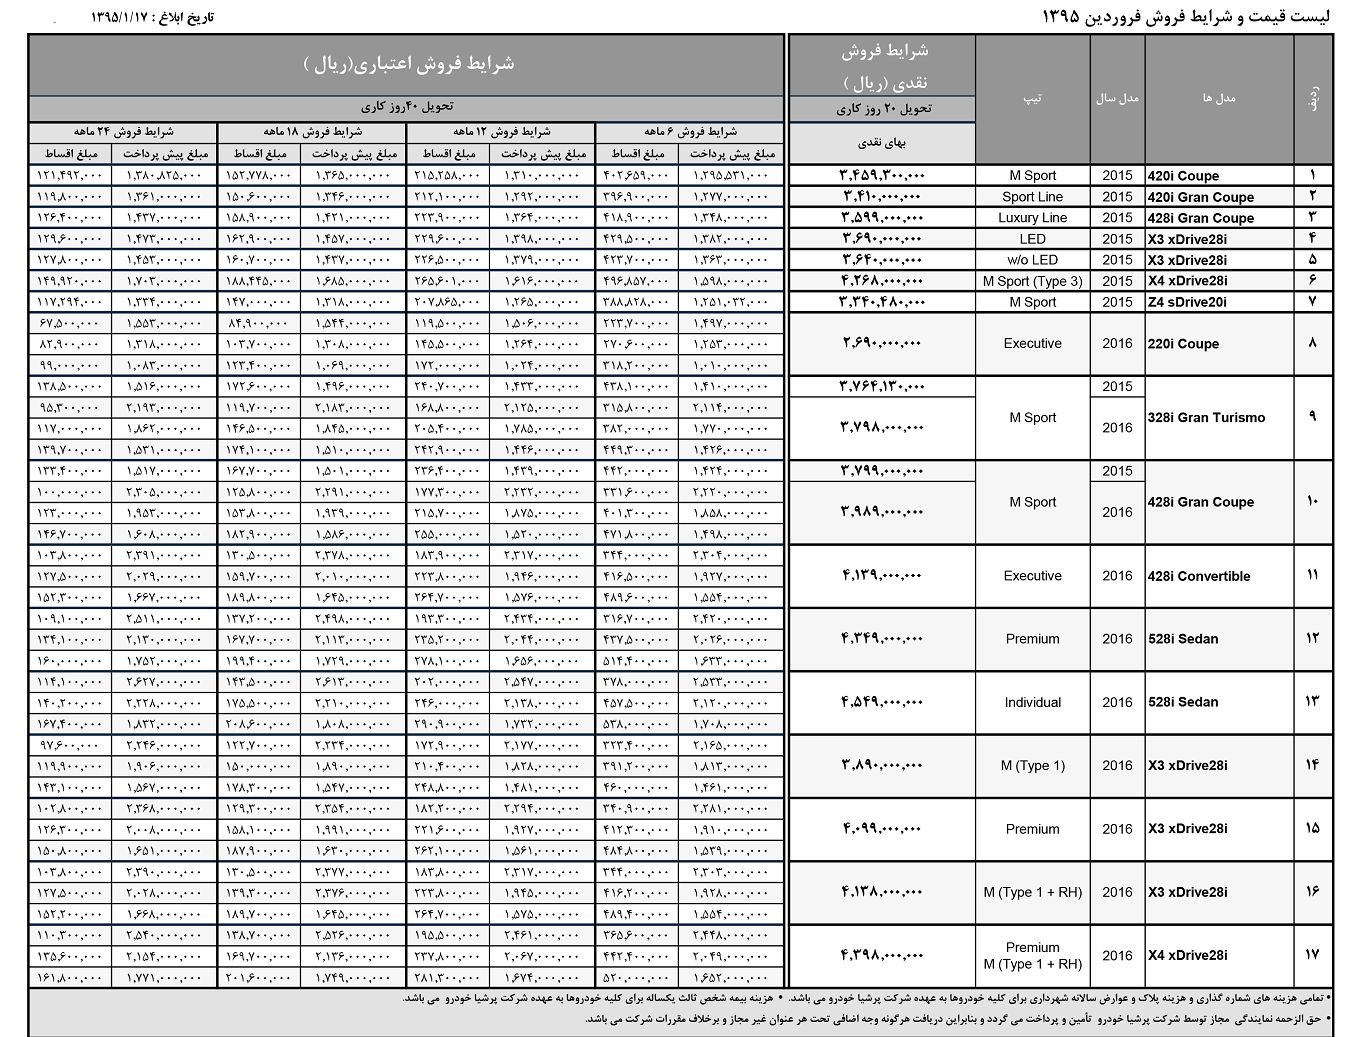  لیست قیمت محصولات BMW - فروردین 95 